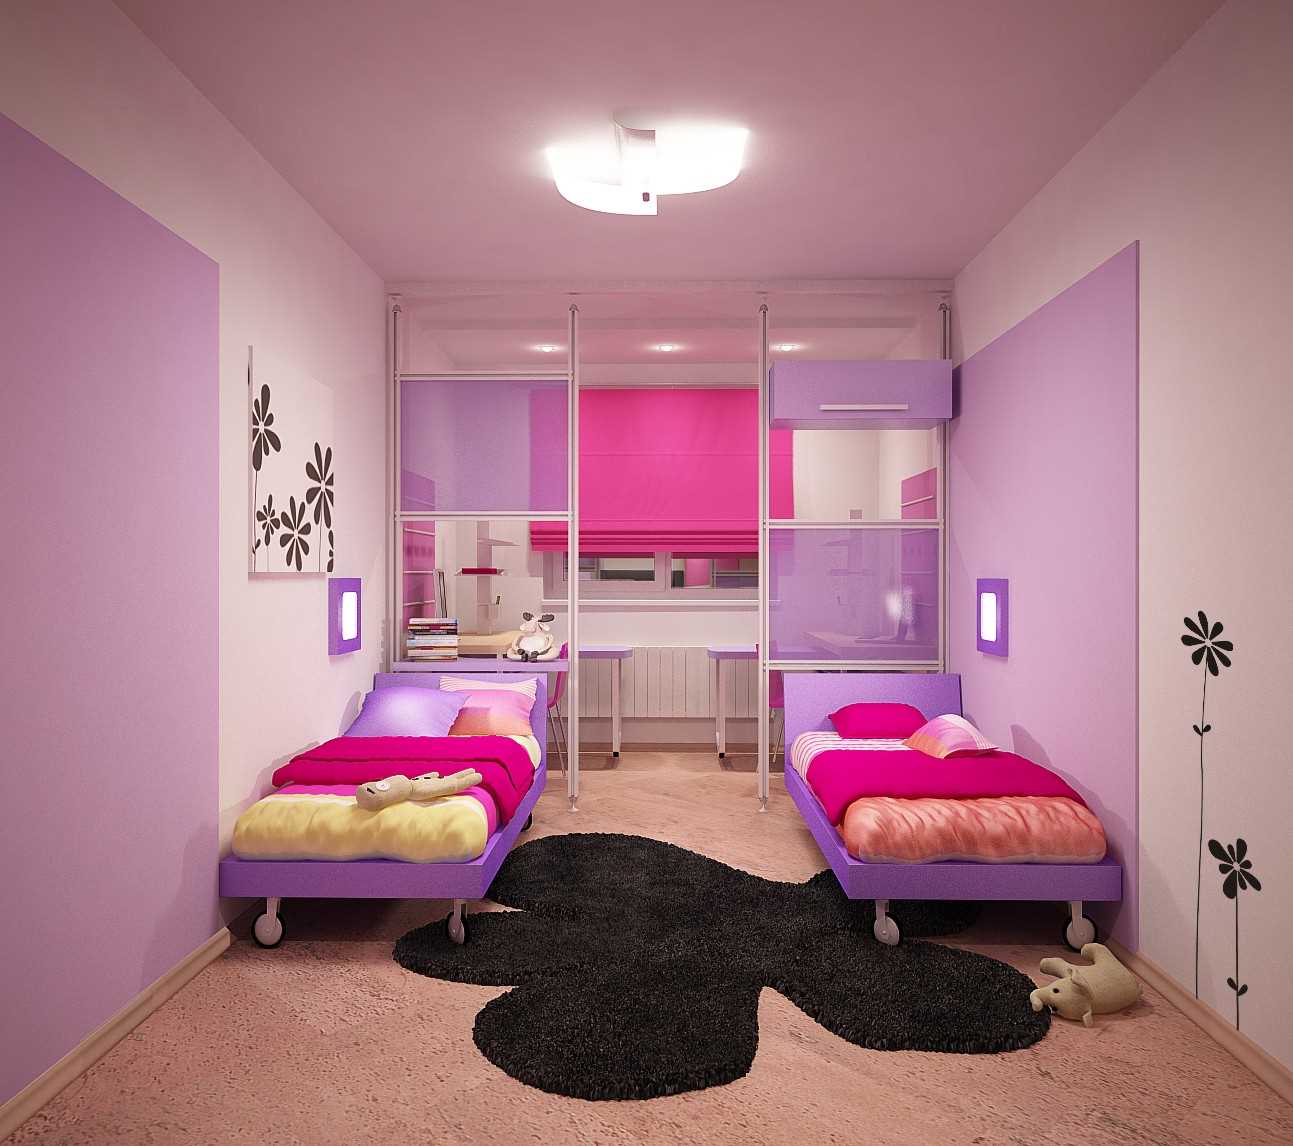 Exemple de design lumineux d'une chambre d'enfants pour deux filles